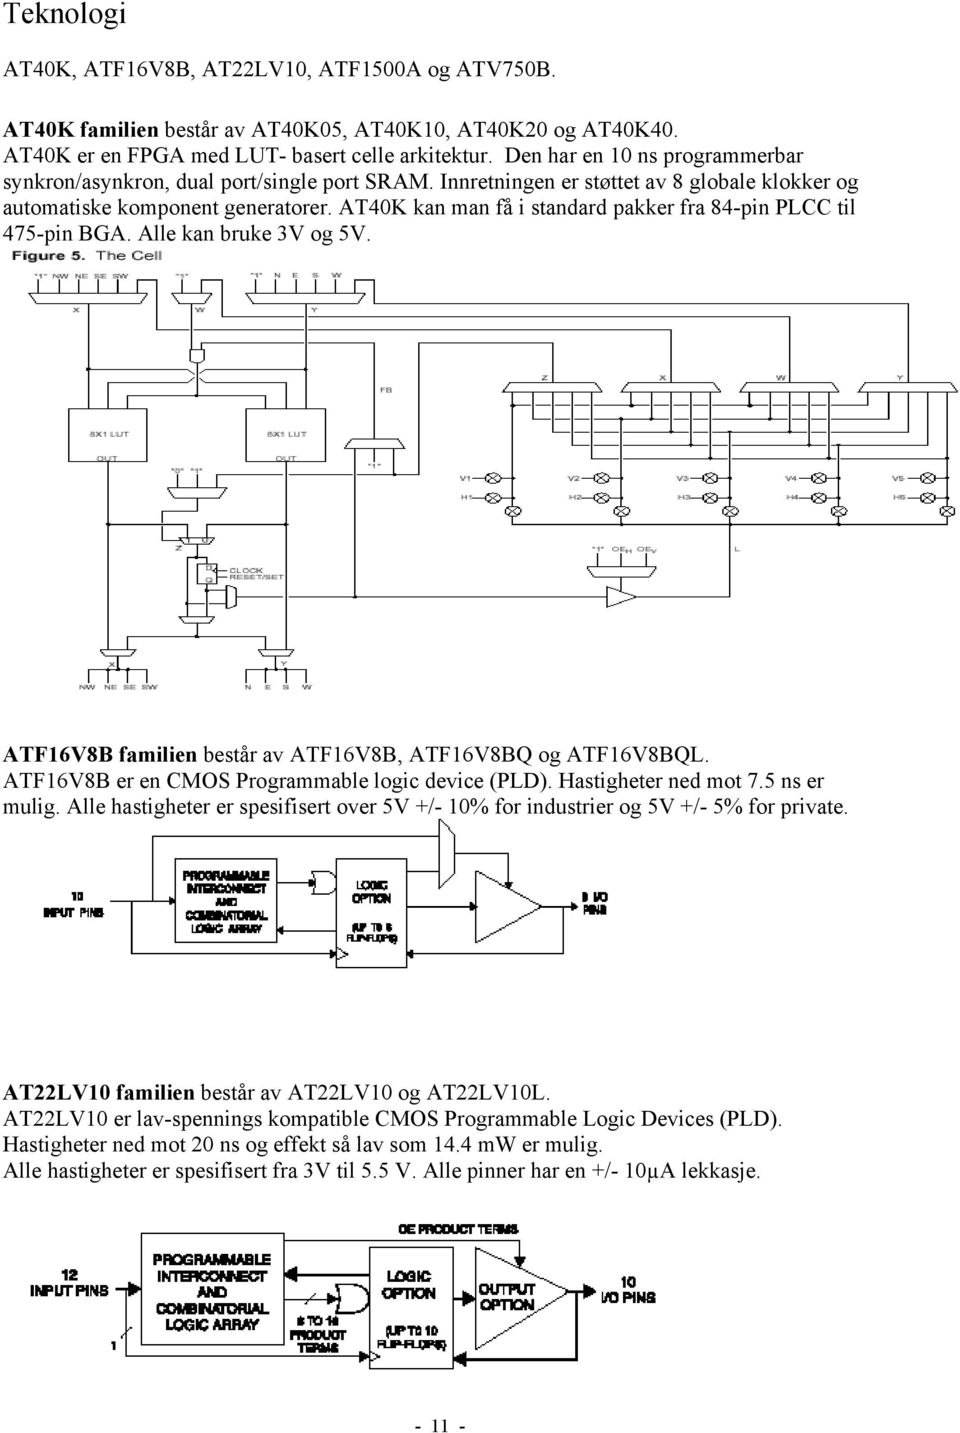 AT40K kan man få i standard pakker fra 84-pin PLCC til 475-pin BGA. Alle kan bruke 3V og 5V. ATF16V8B familien består av ATF16V8B, ATF16V8BQ og ATF16V8BQL.